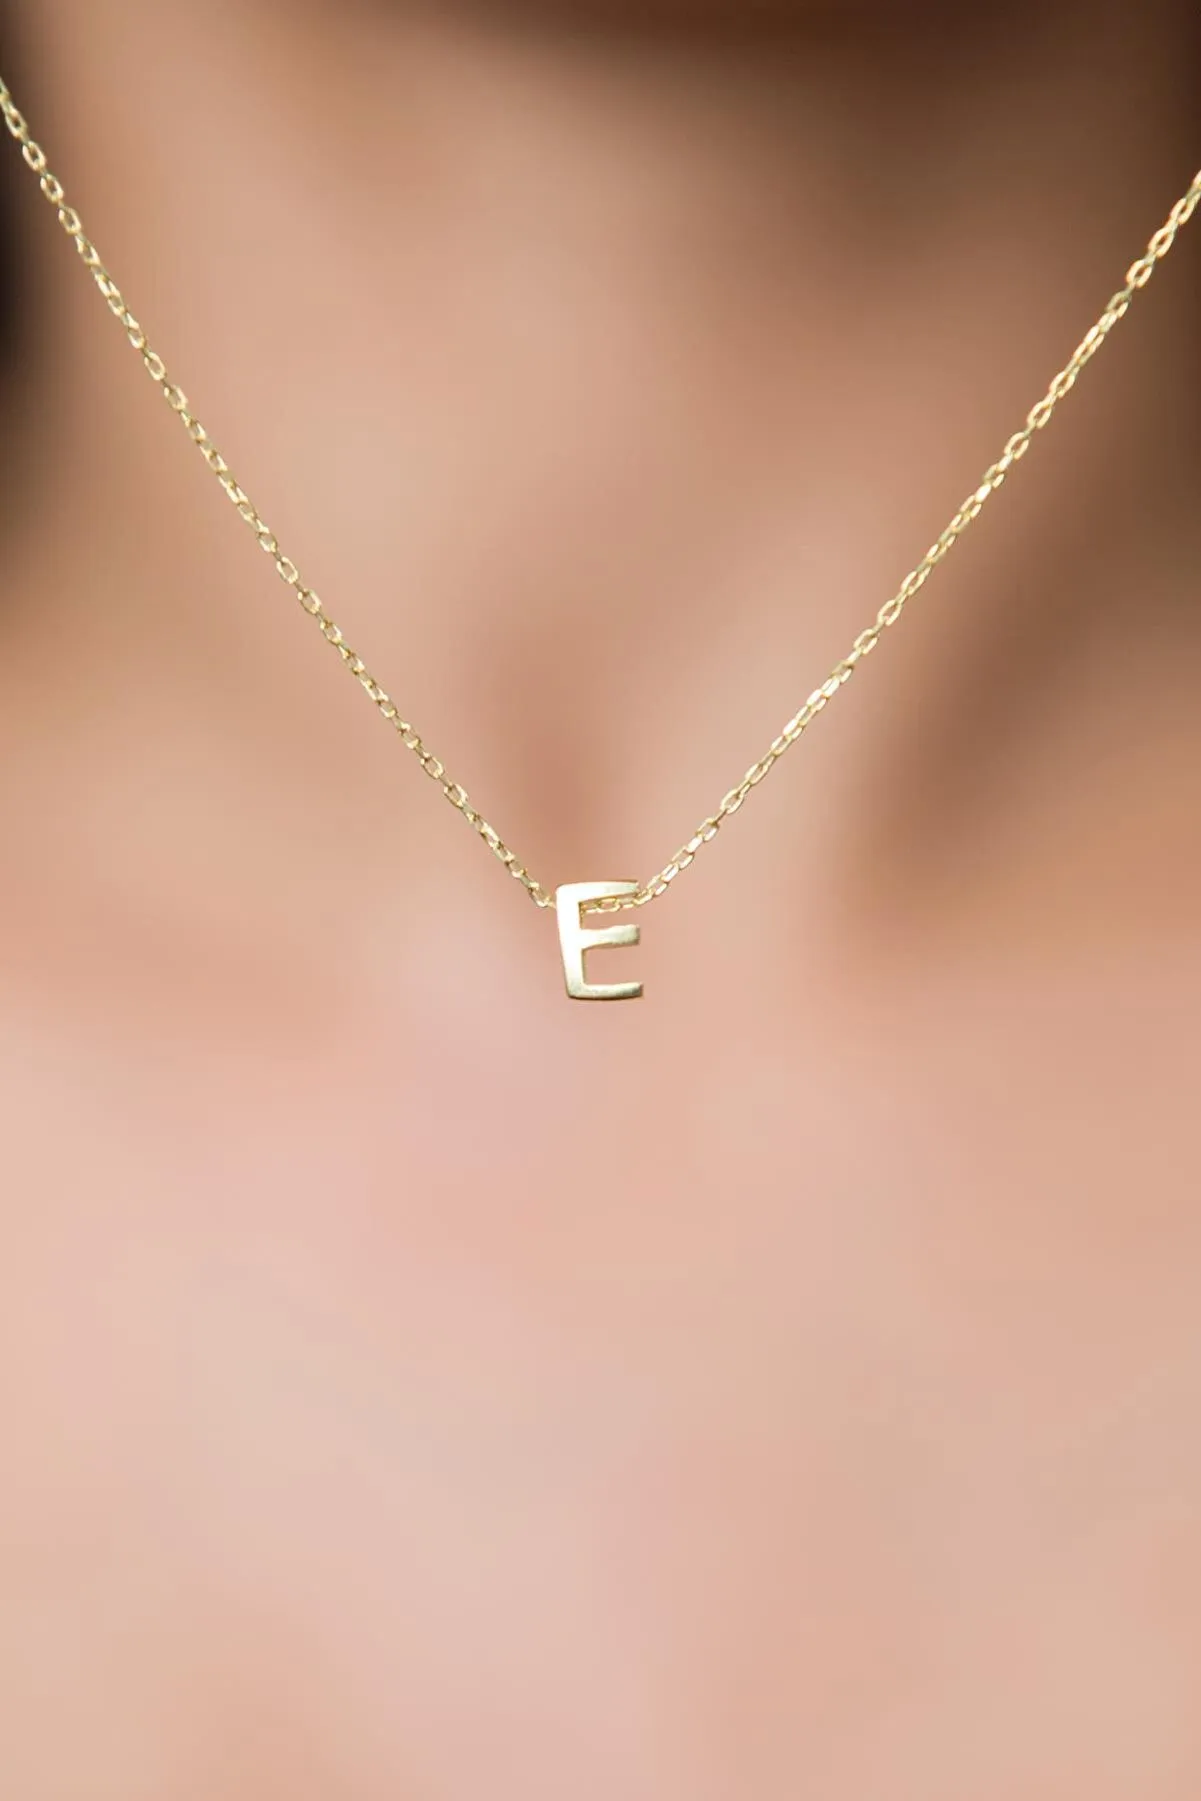 Серебряное ожерелье с буквой E в обьёме 3d pp001l Larin Silver#1